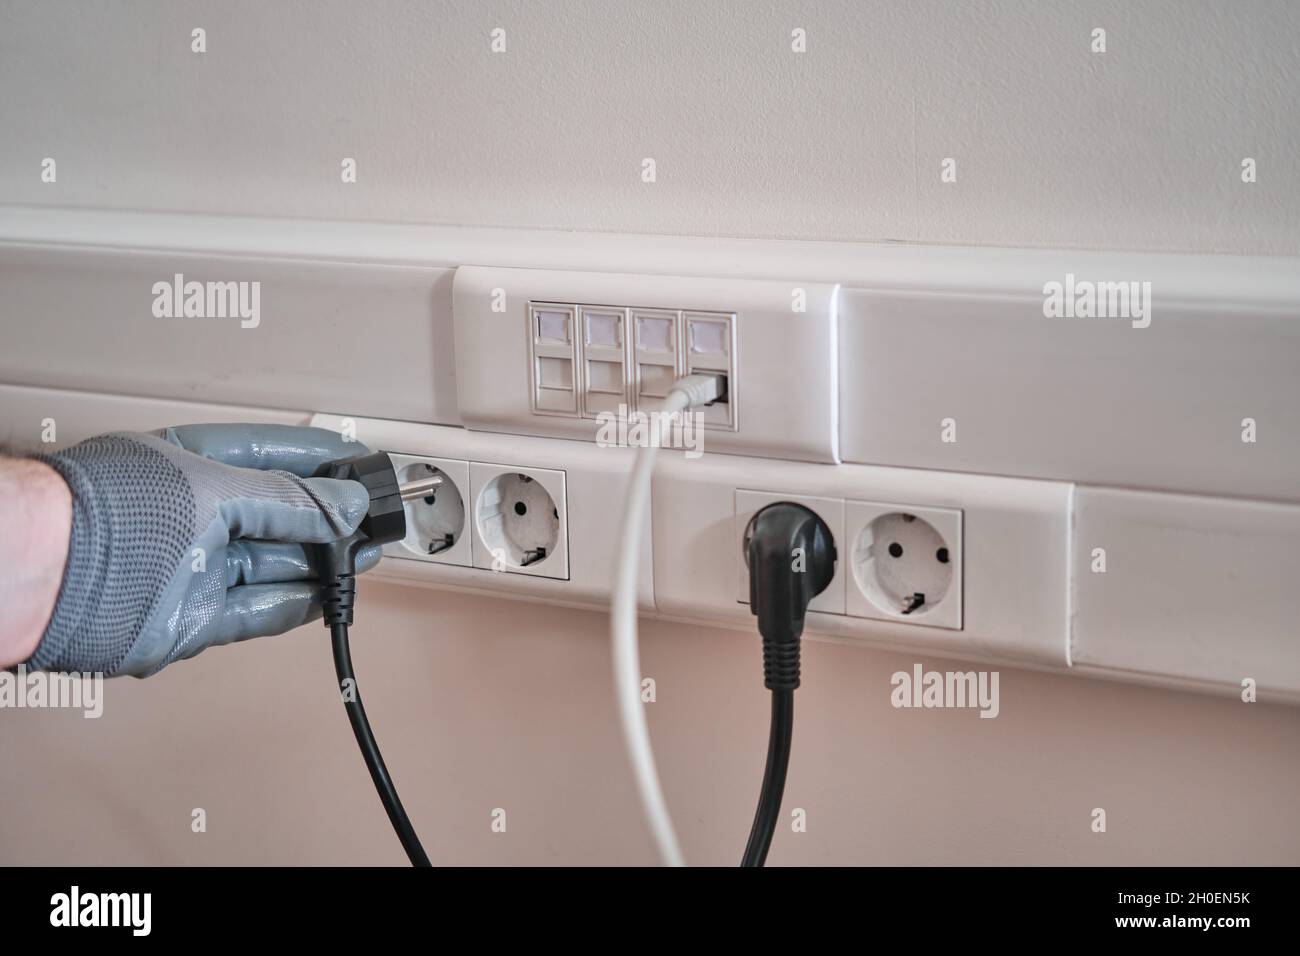 Conexión a la red eléctrica En la oficina, una mano enguantada sujeta el  cable para conectarlo a la toma de corriente Fotografía de stock - Alamy